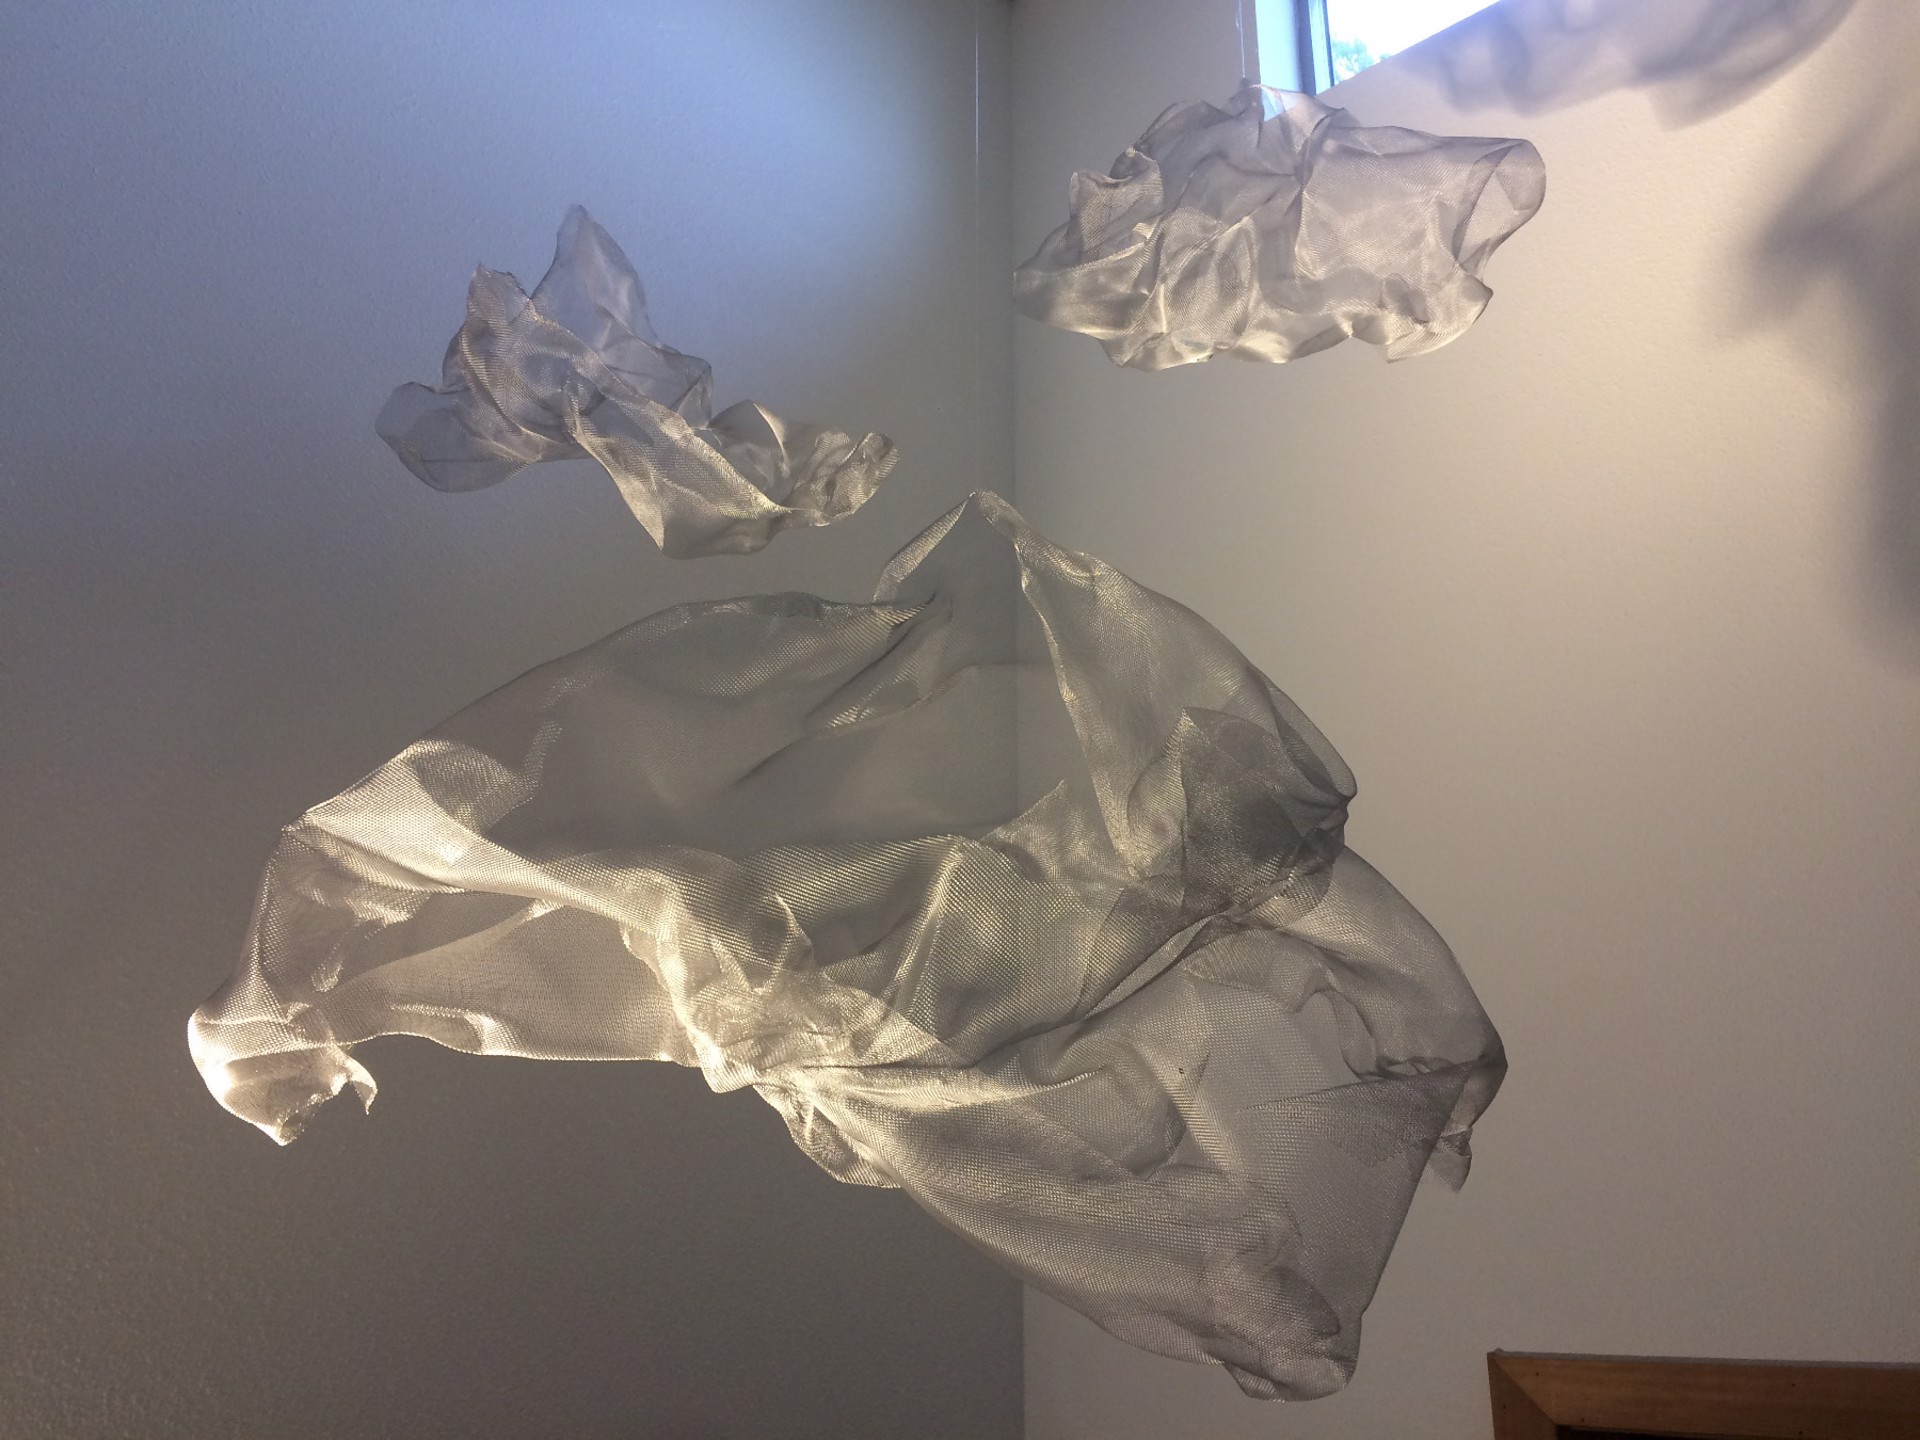 Silver Clouds (triptych) by Sophia Dixon Dillo